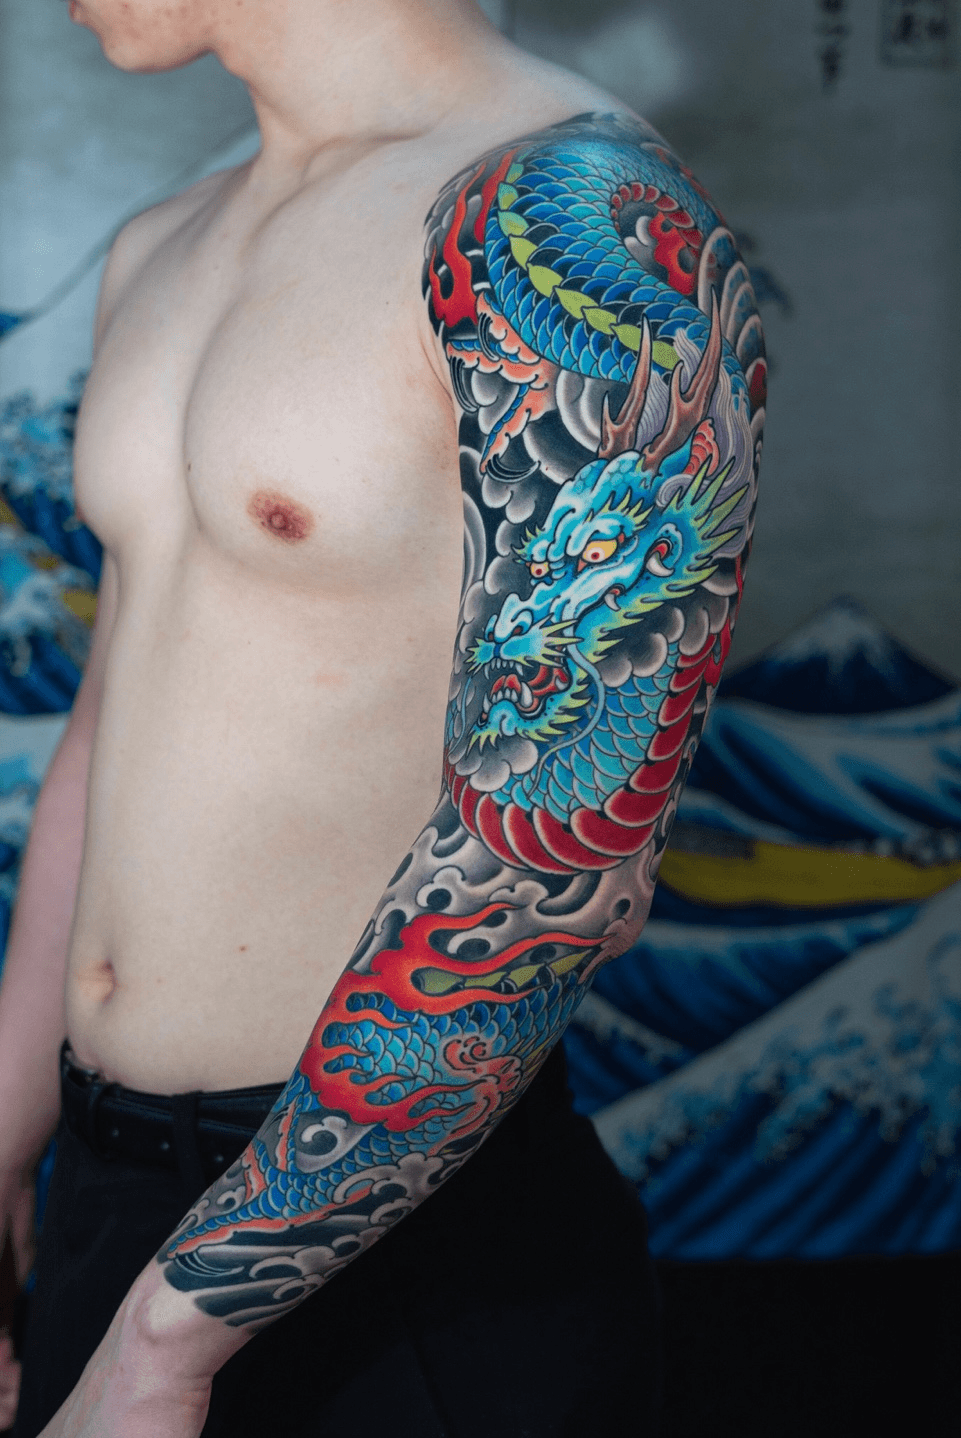 No the EU has not banned colour tattoos